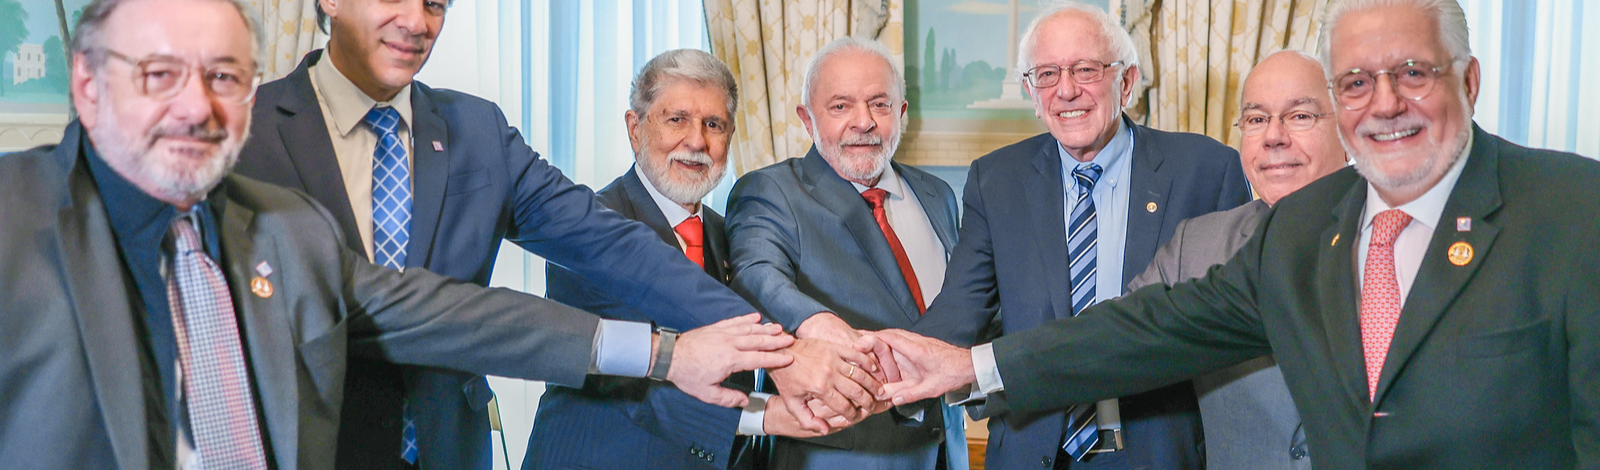 Juca Ferreira | Liderança de Lula tem relevância mundial e isso precisa ser espelhado no Brasil